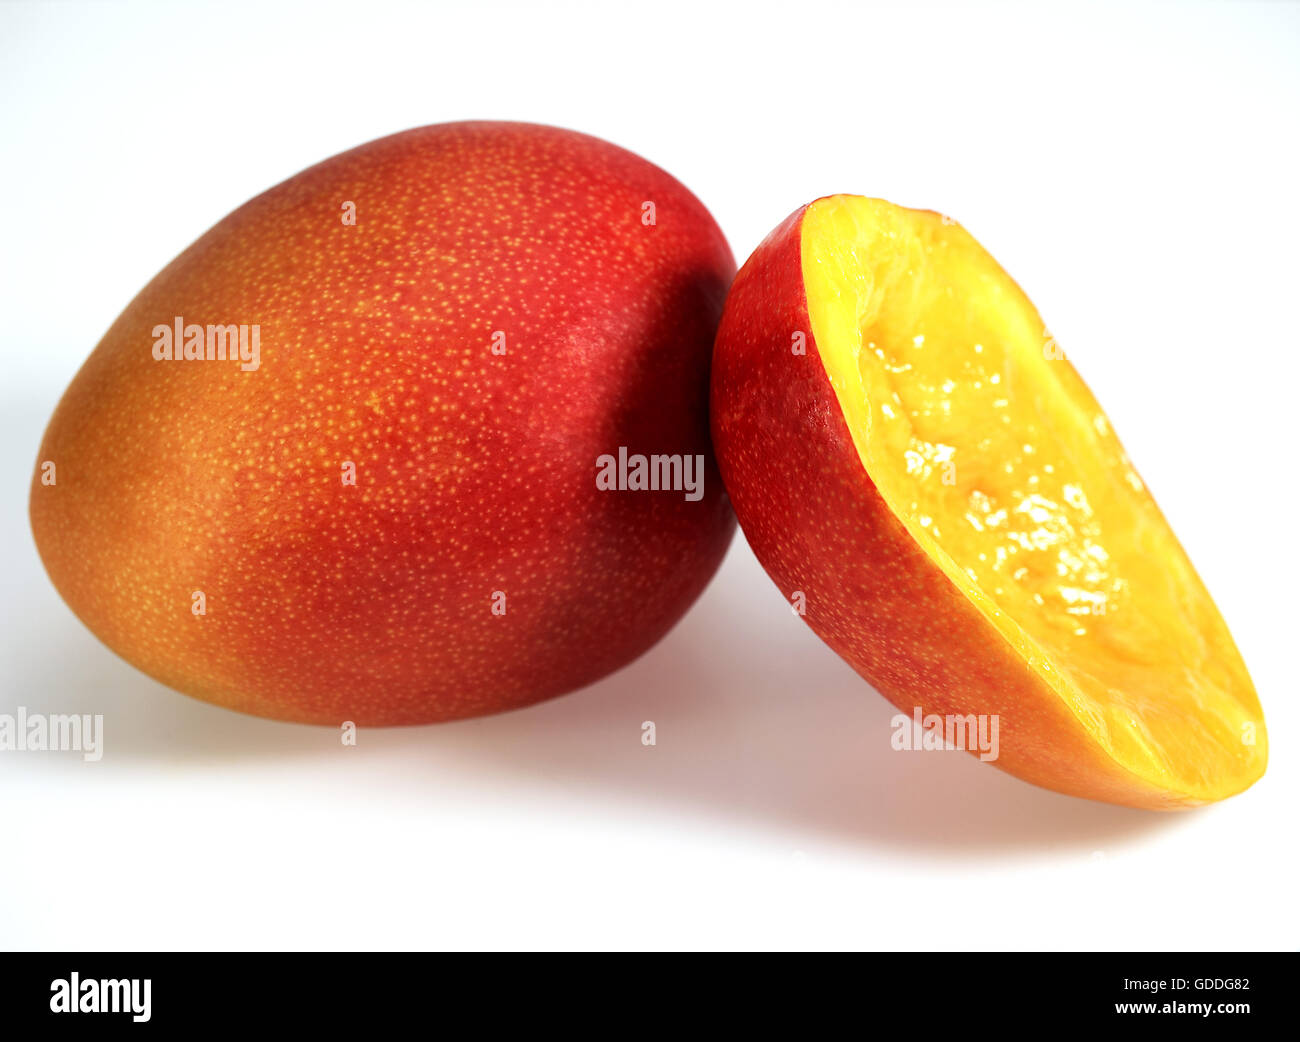 MANGO mangifera indica AGAINST WHITE BACKGROUND Stock Photo